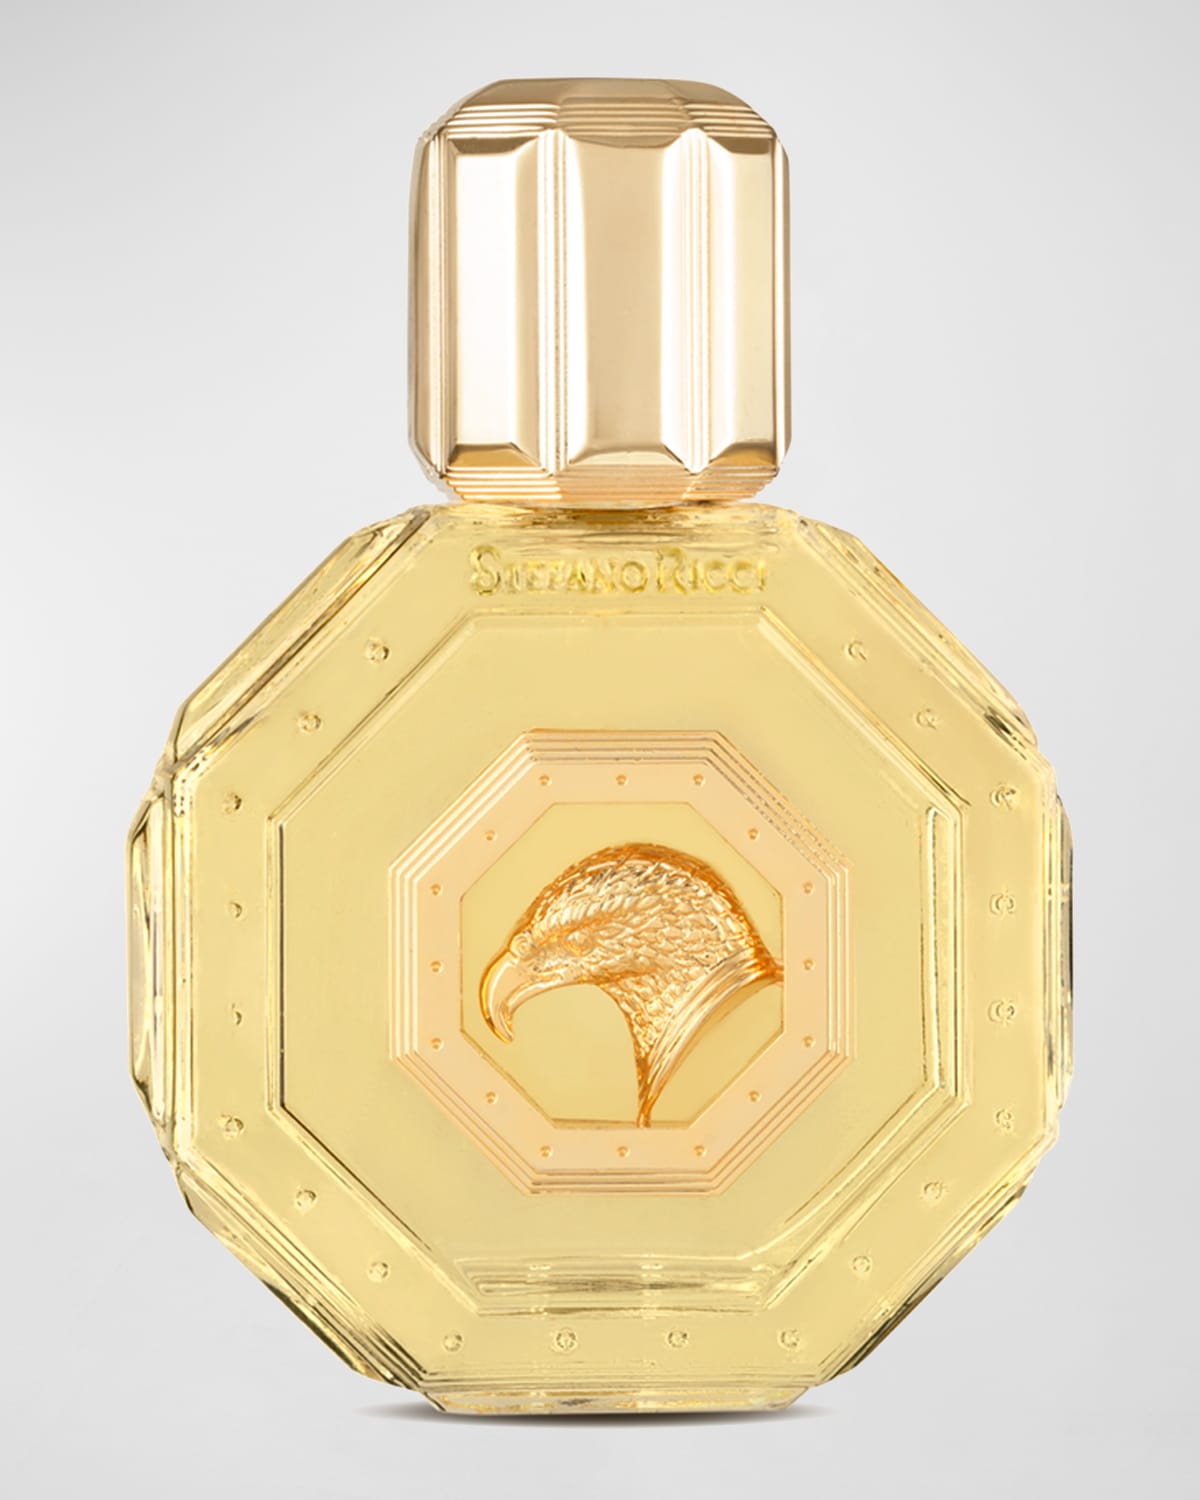 Royal Eagle Gold Fragrance for Men, 1.7 oz.